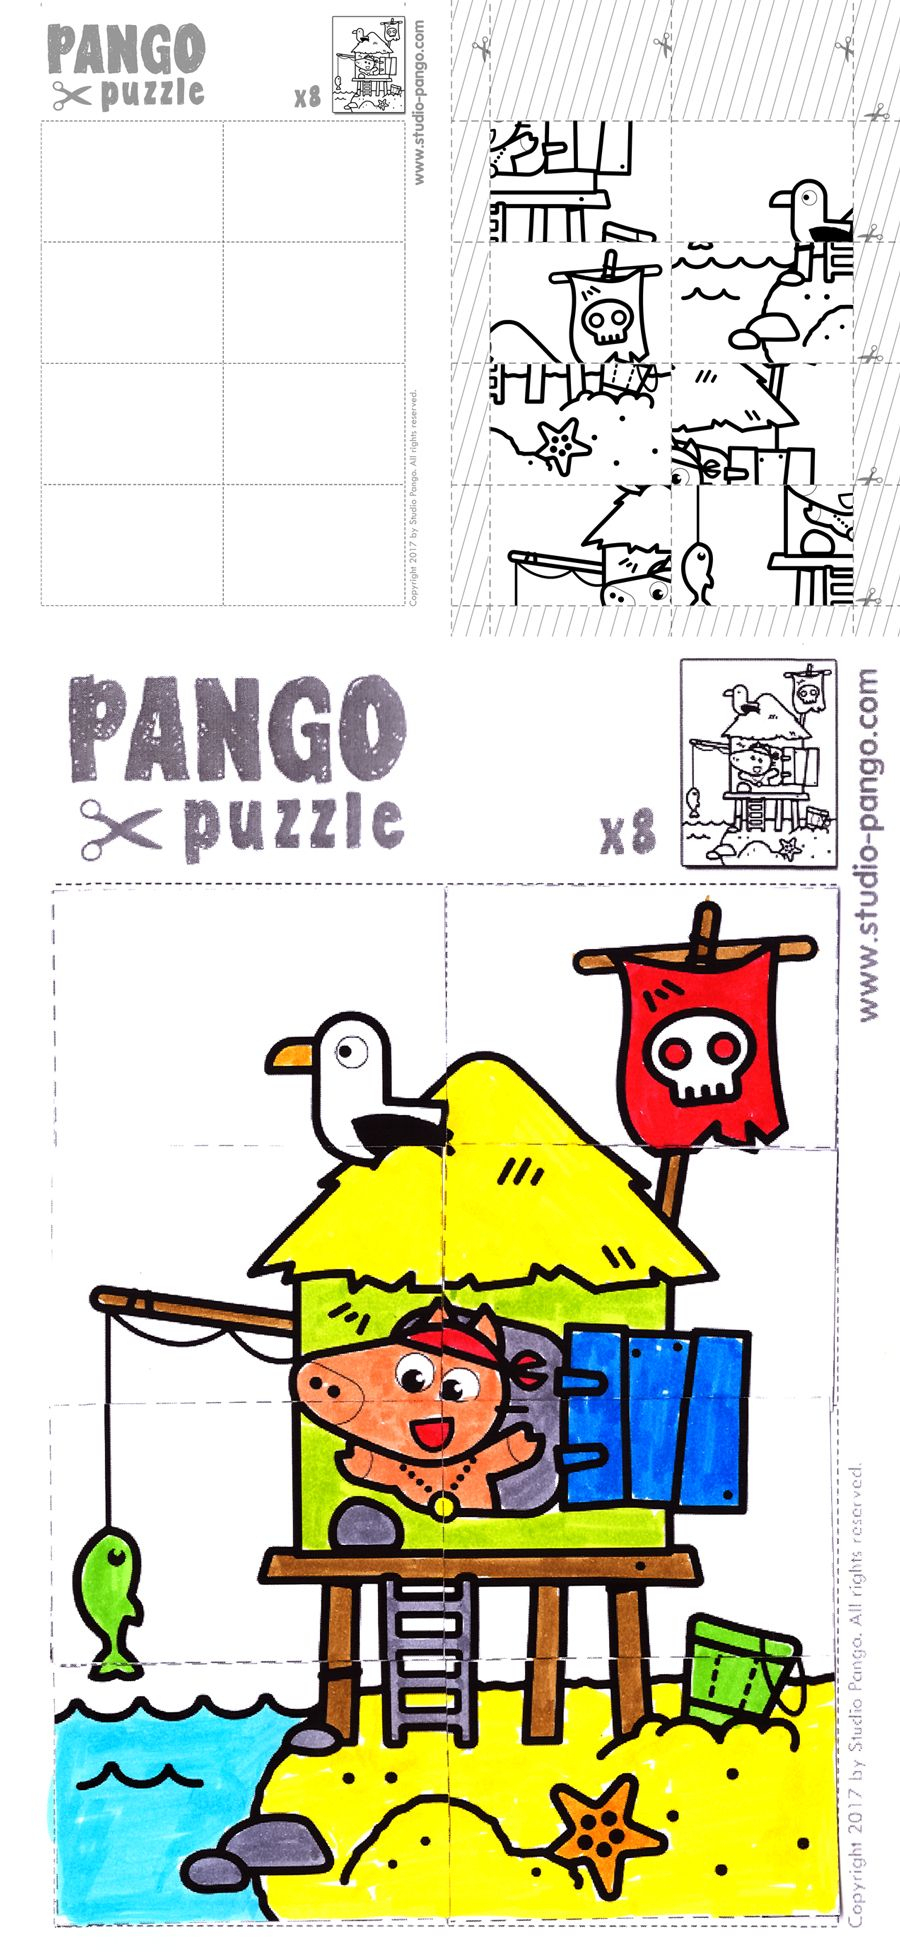 Pirate Island Jigsaw Puzzle #8 #pieces #jigsaw | Pango Printable - 8 Piece Puzzle Printable